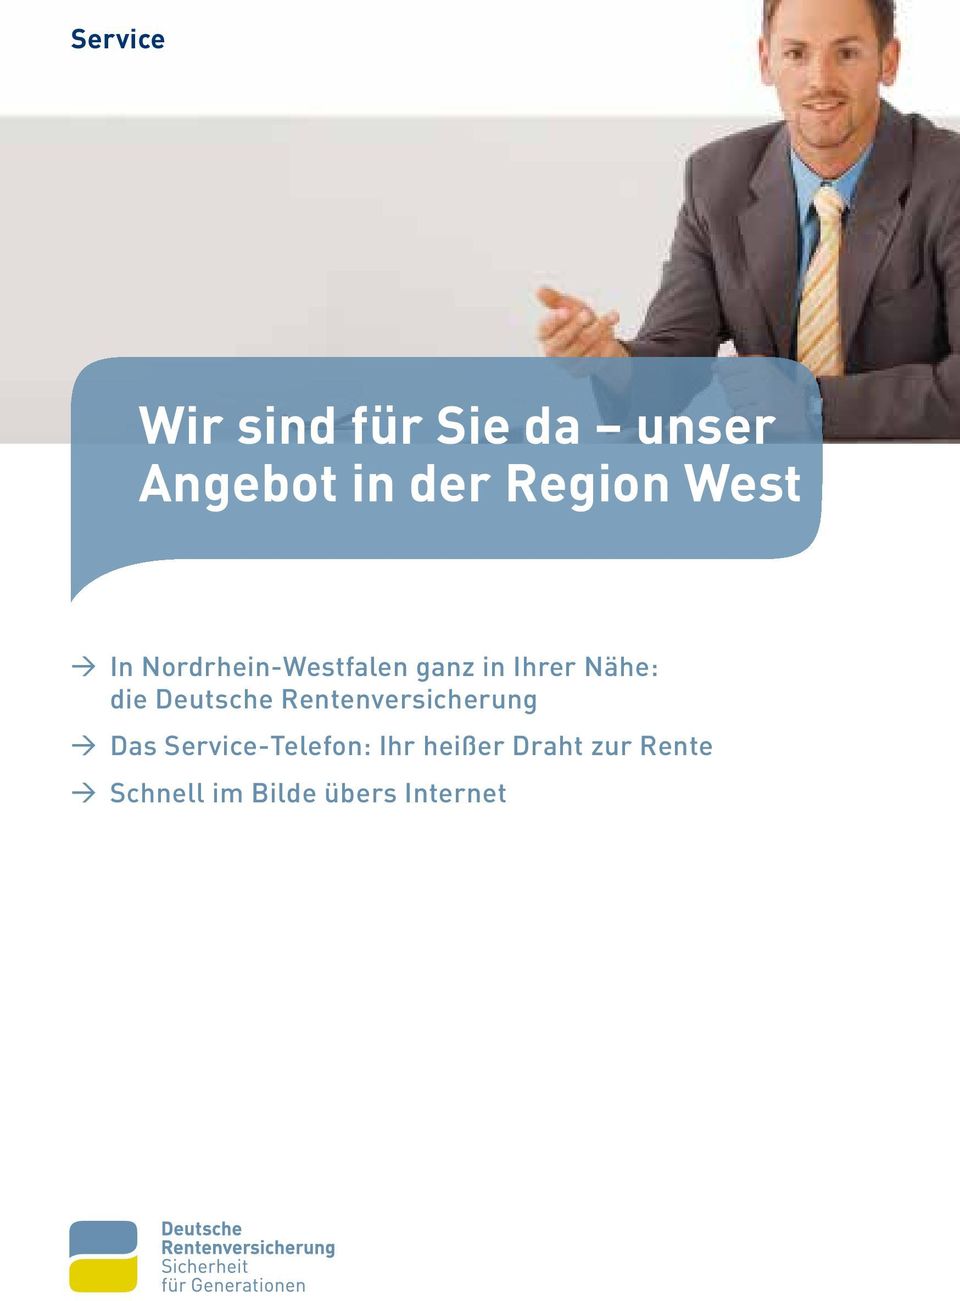 Deutsche Rentenversicherung > Das Service-Telefon: Ihr